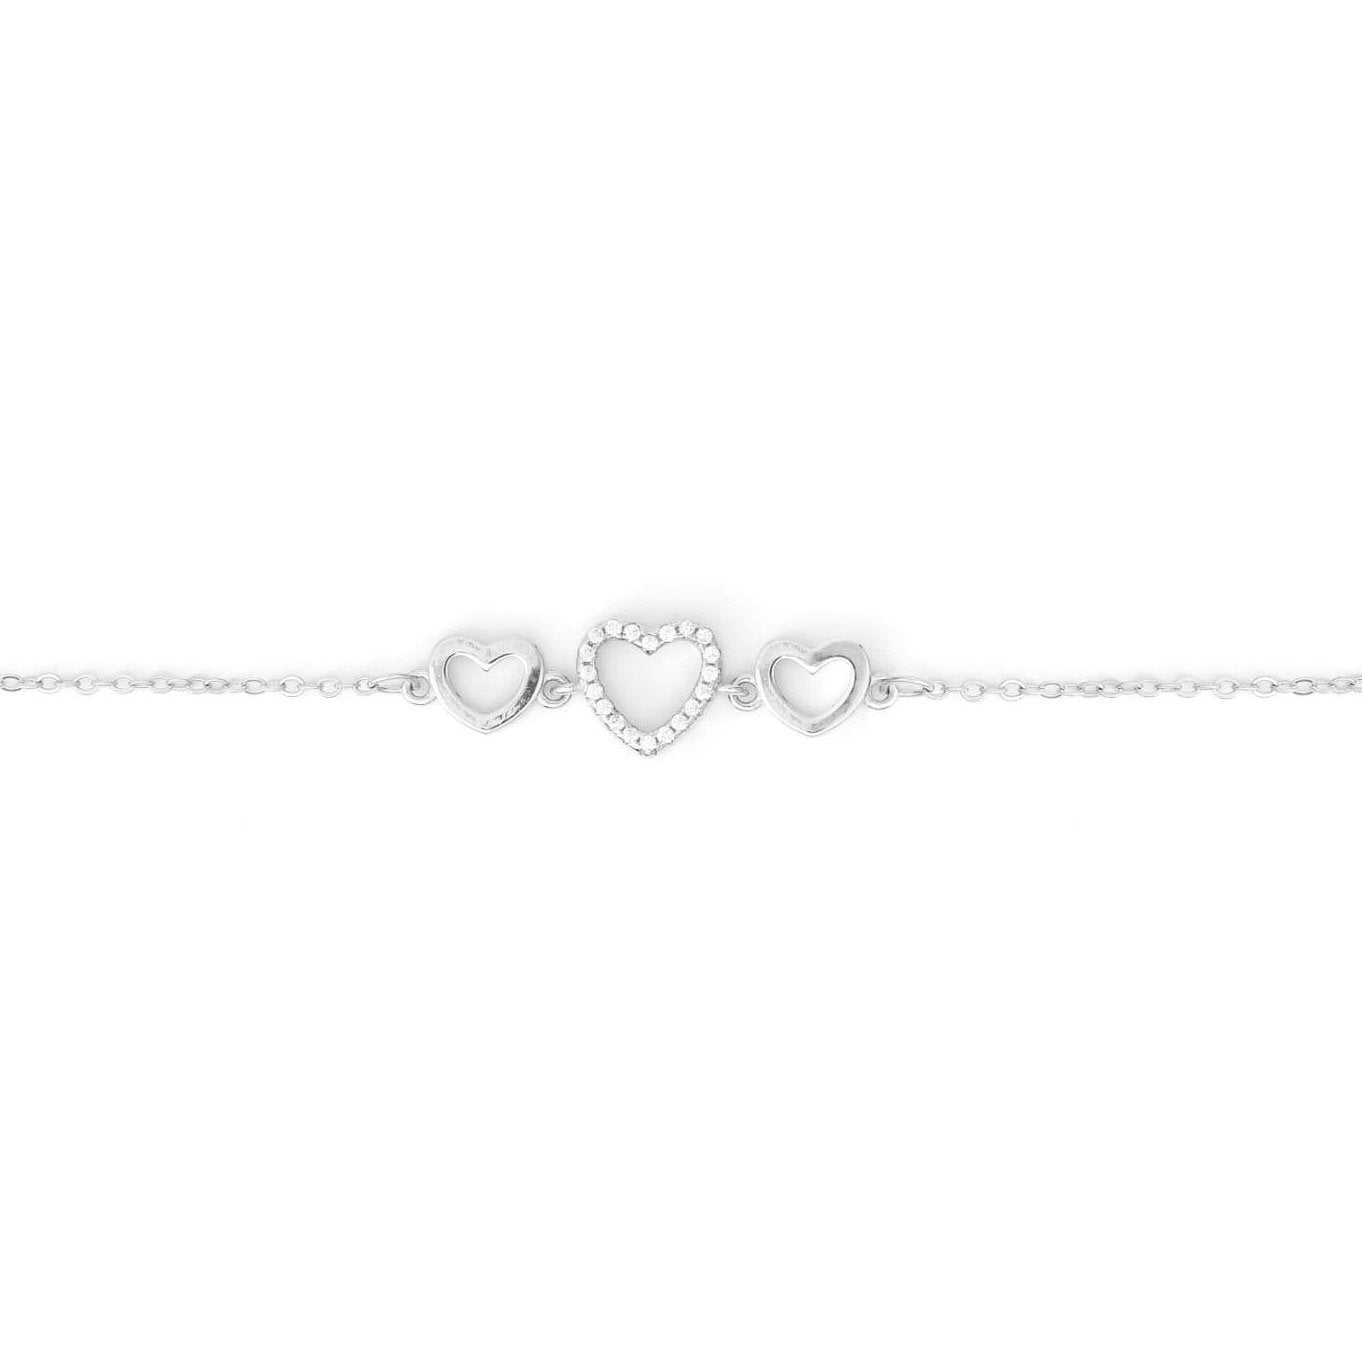 Dainty Triple Heart Bracelet - Gift Box Included